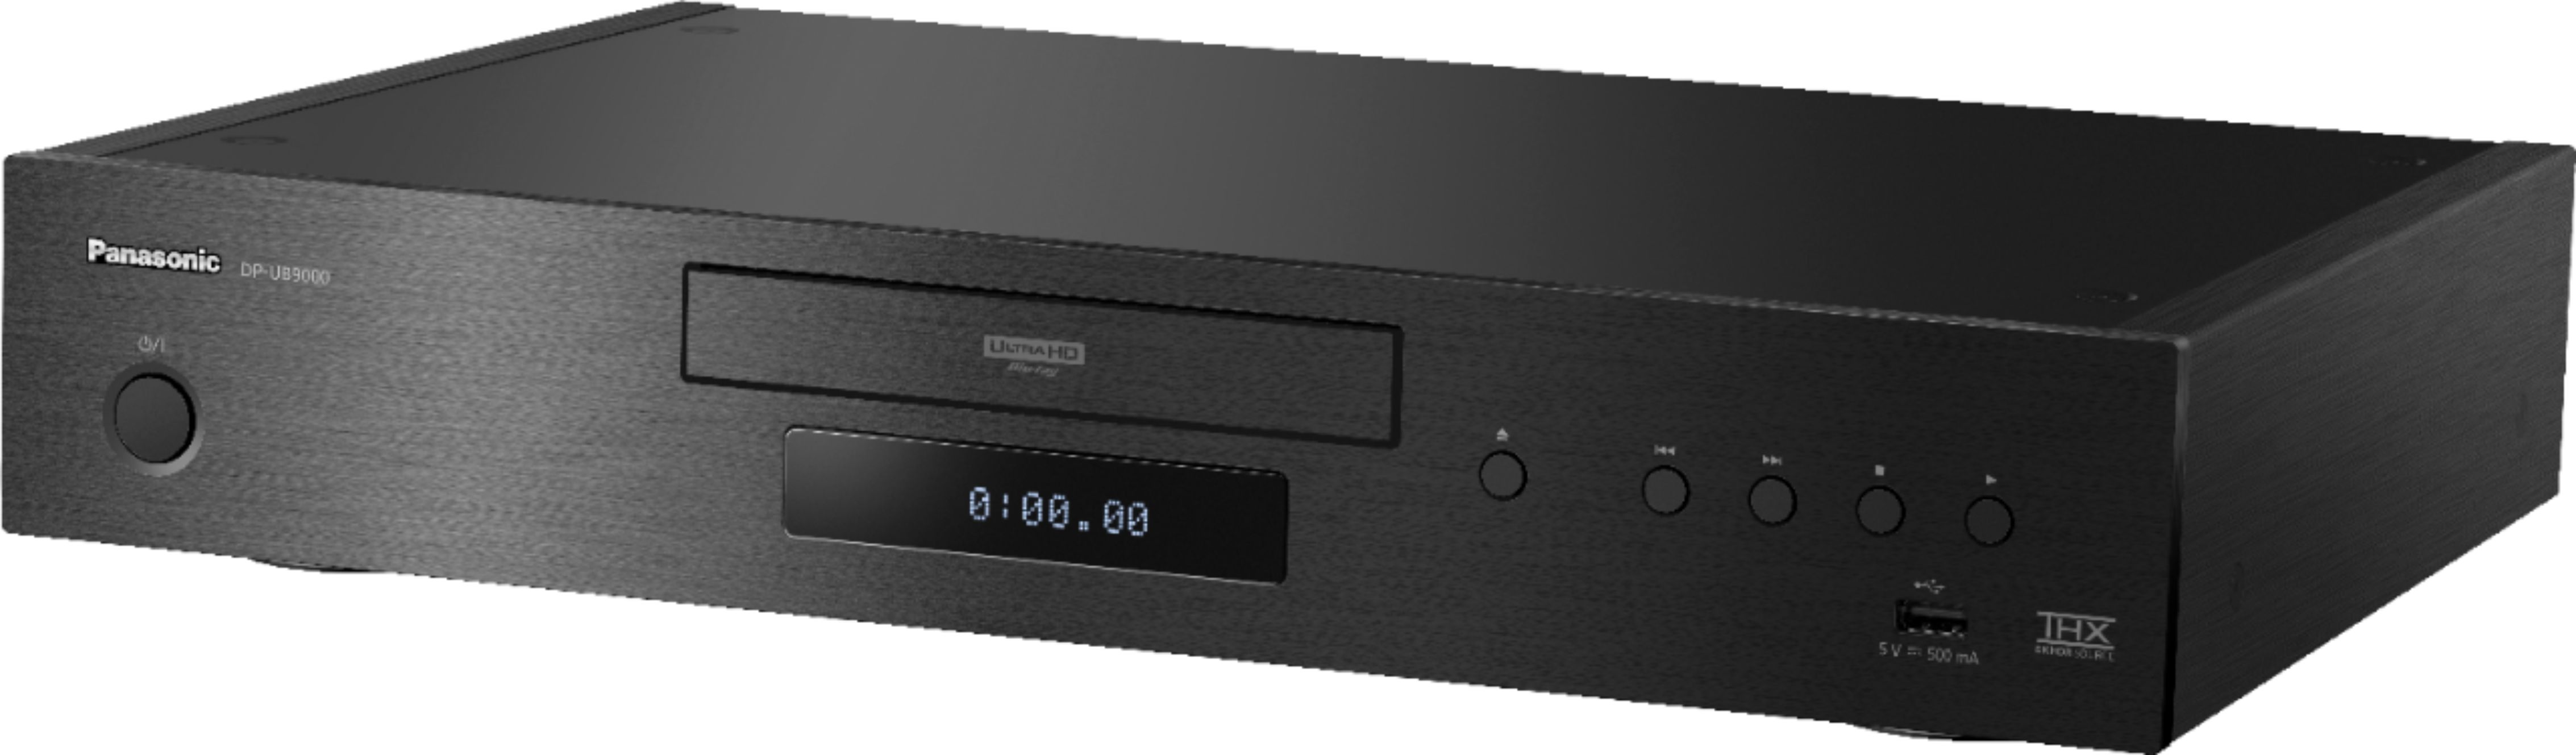 テレビ/映像機器 ブルーレイレコーダー Best Buy: Panasonic Streaming 4K Ultra HD Hi-Res Audio with Dolby 